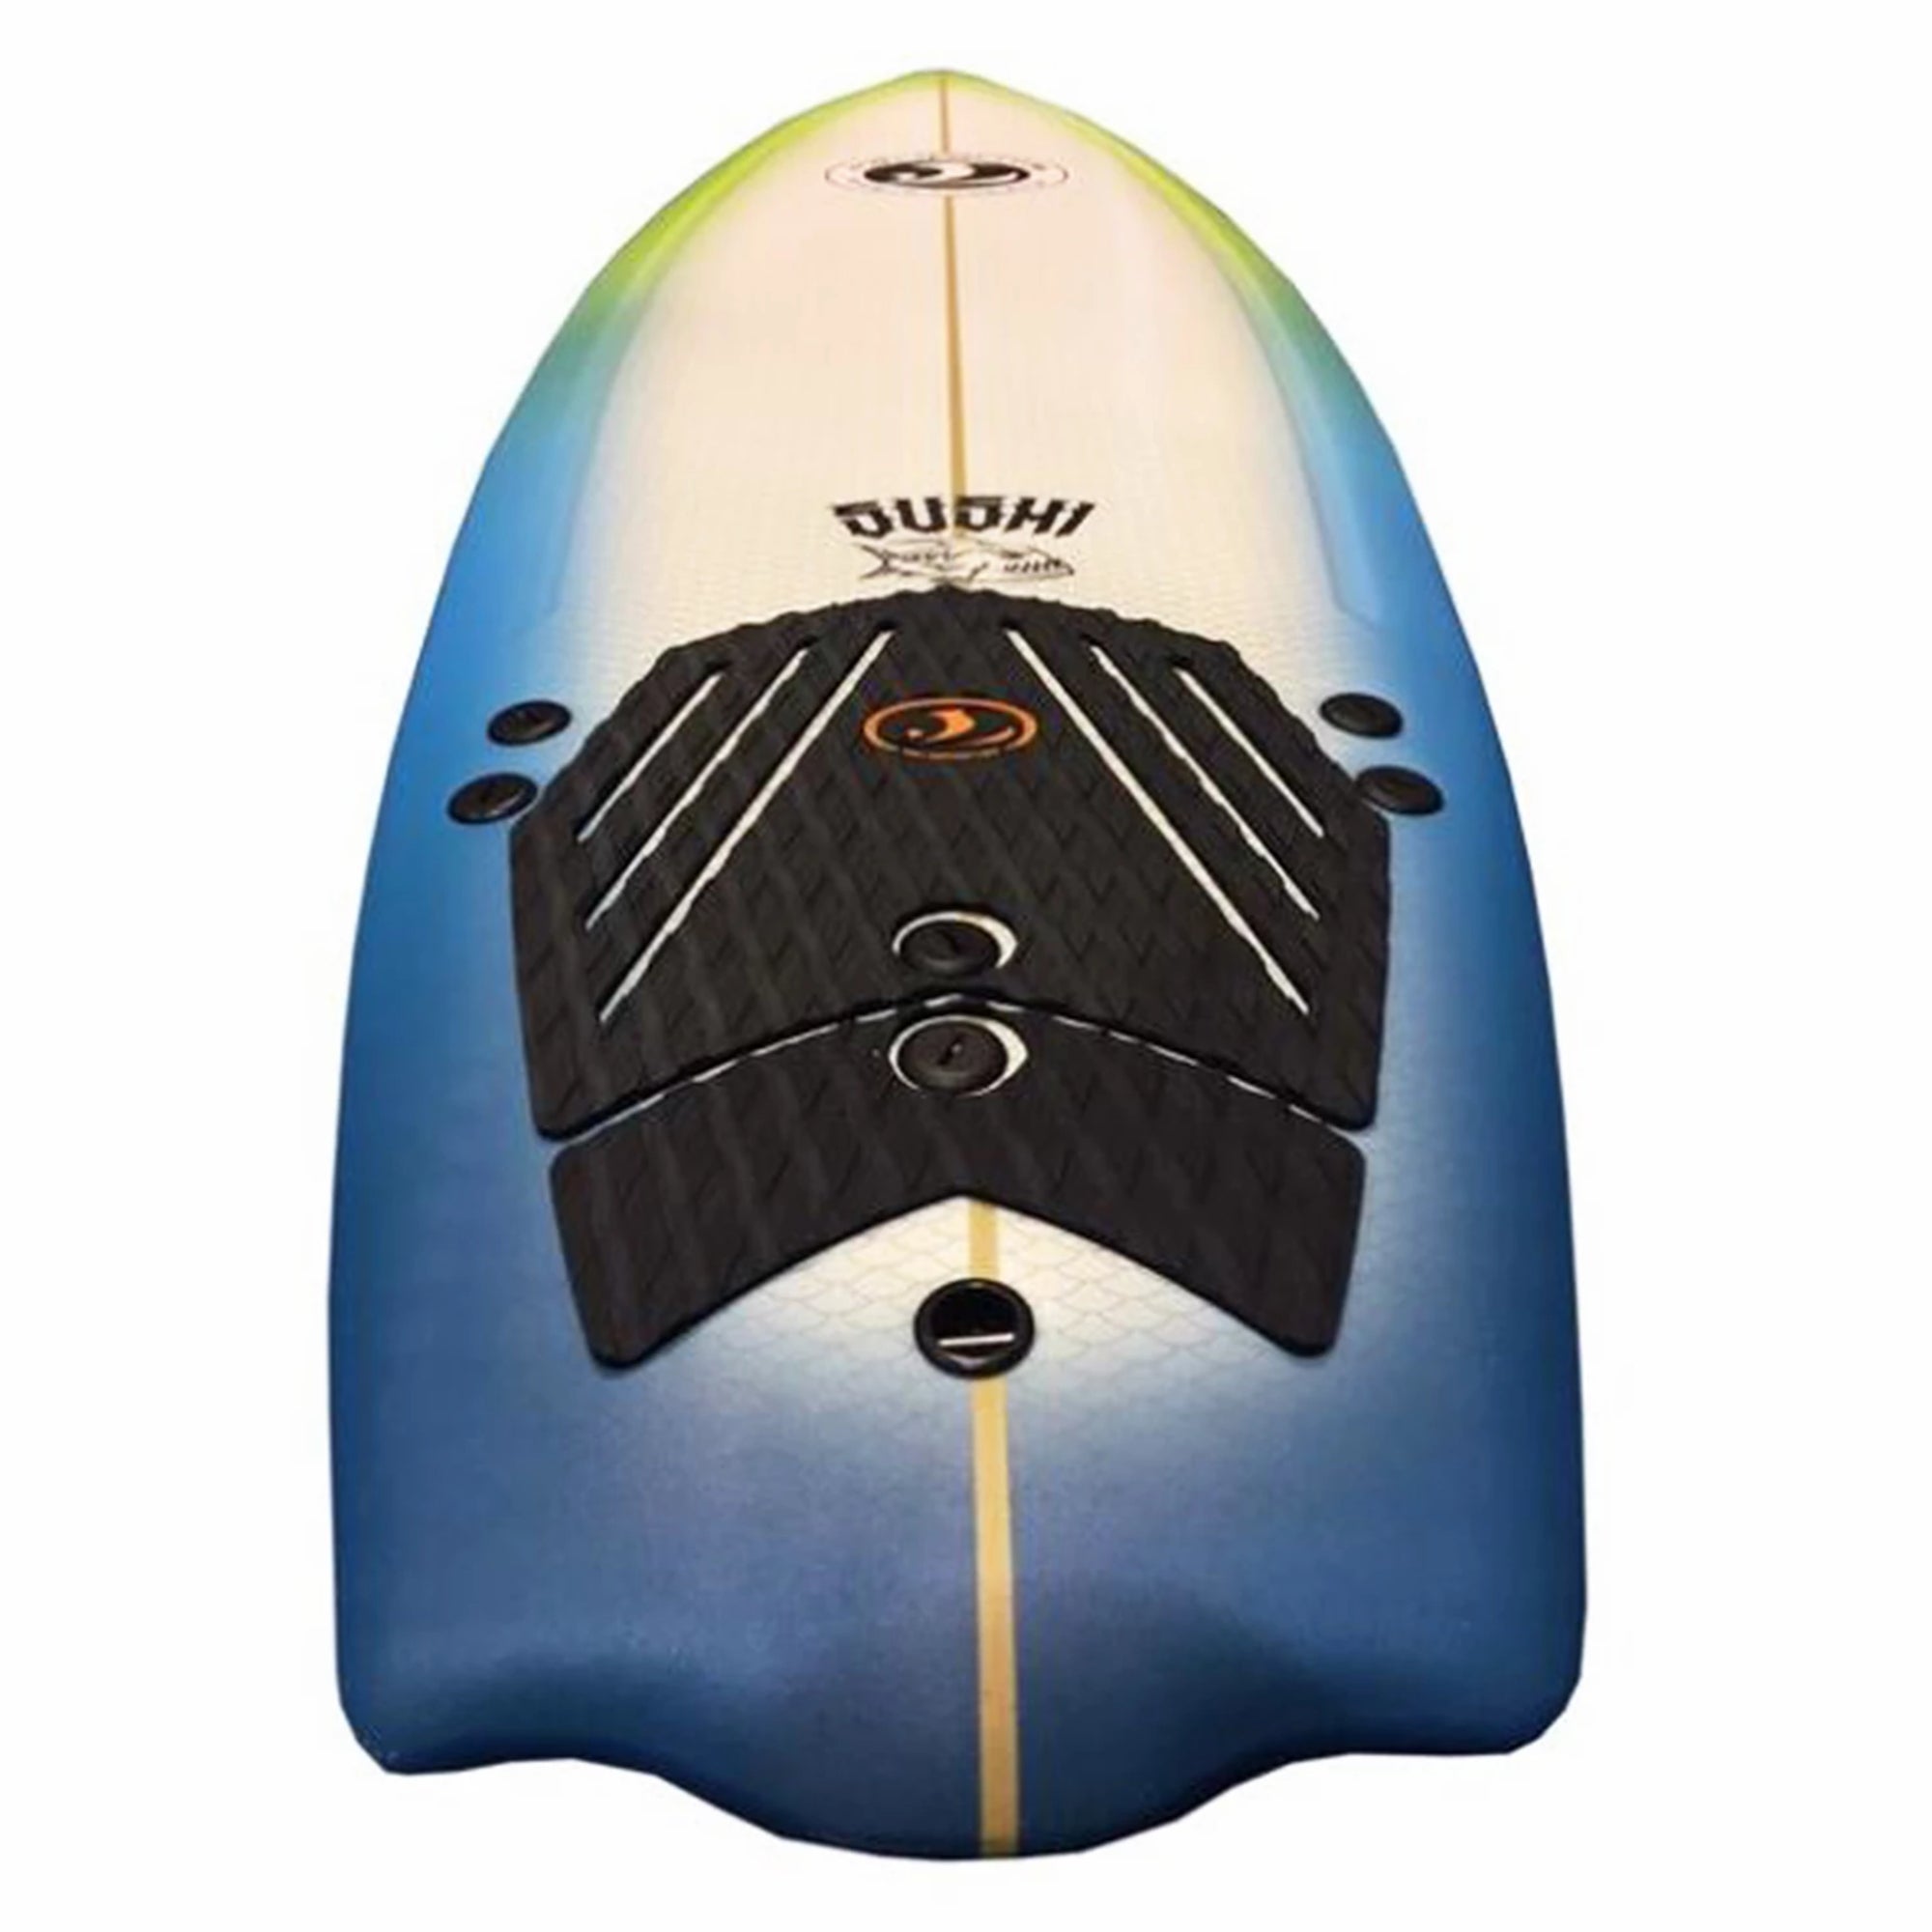 California Board Company 5'8 Sushi Soft Surfboard , surfers sushi